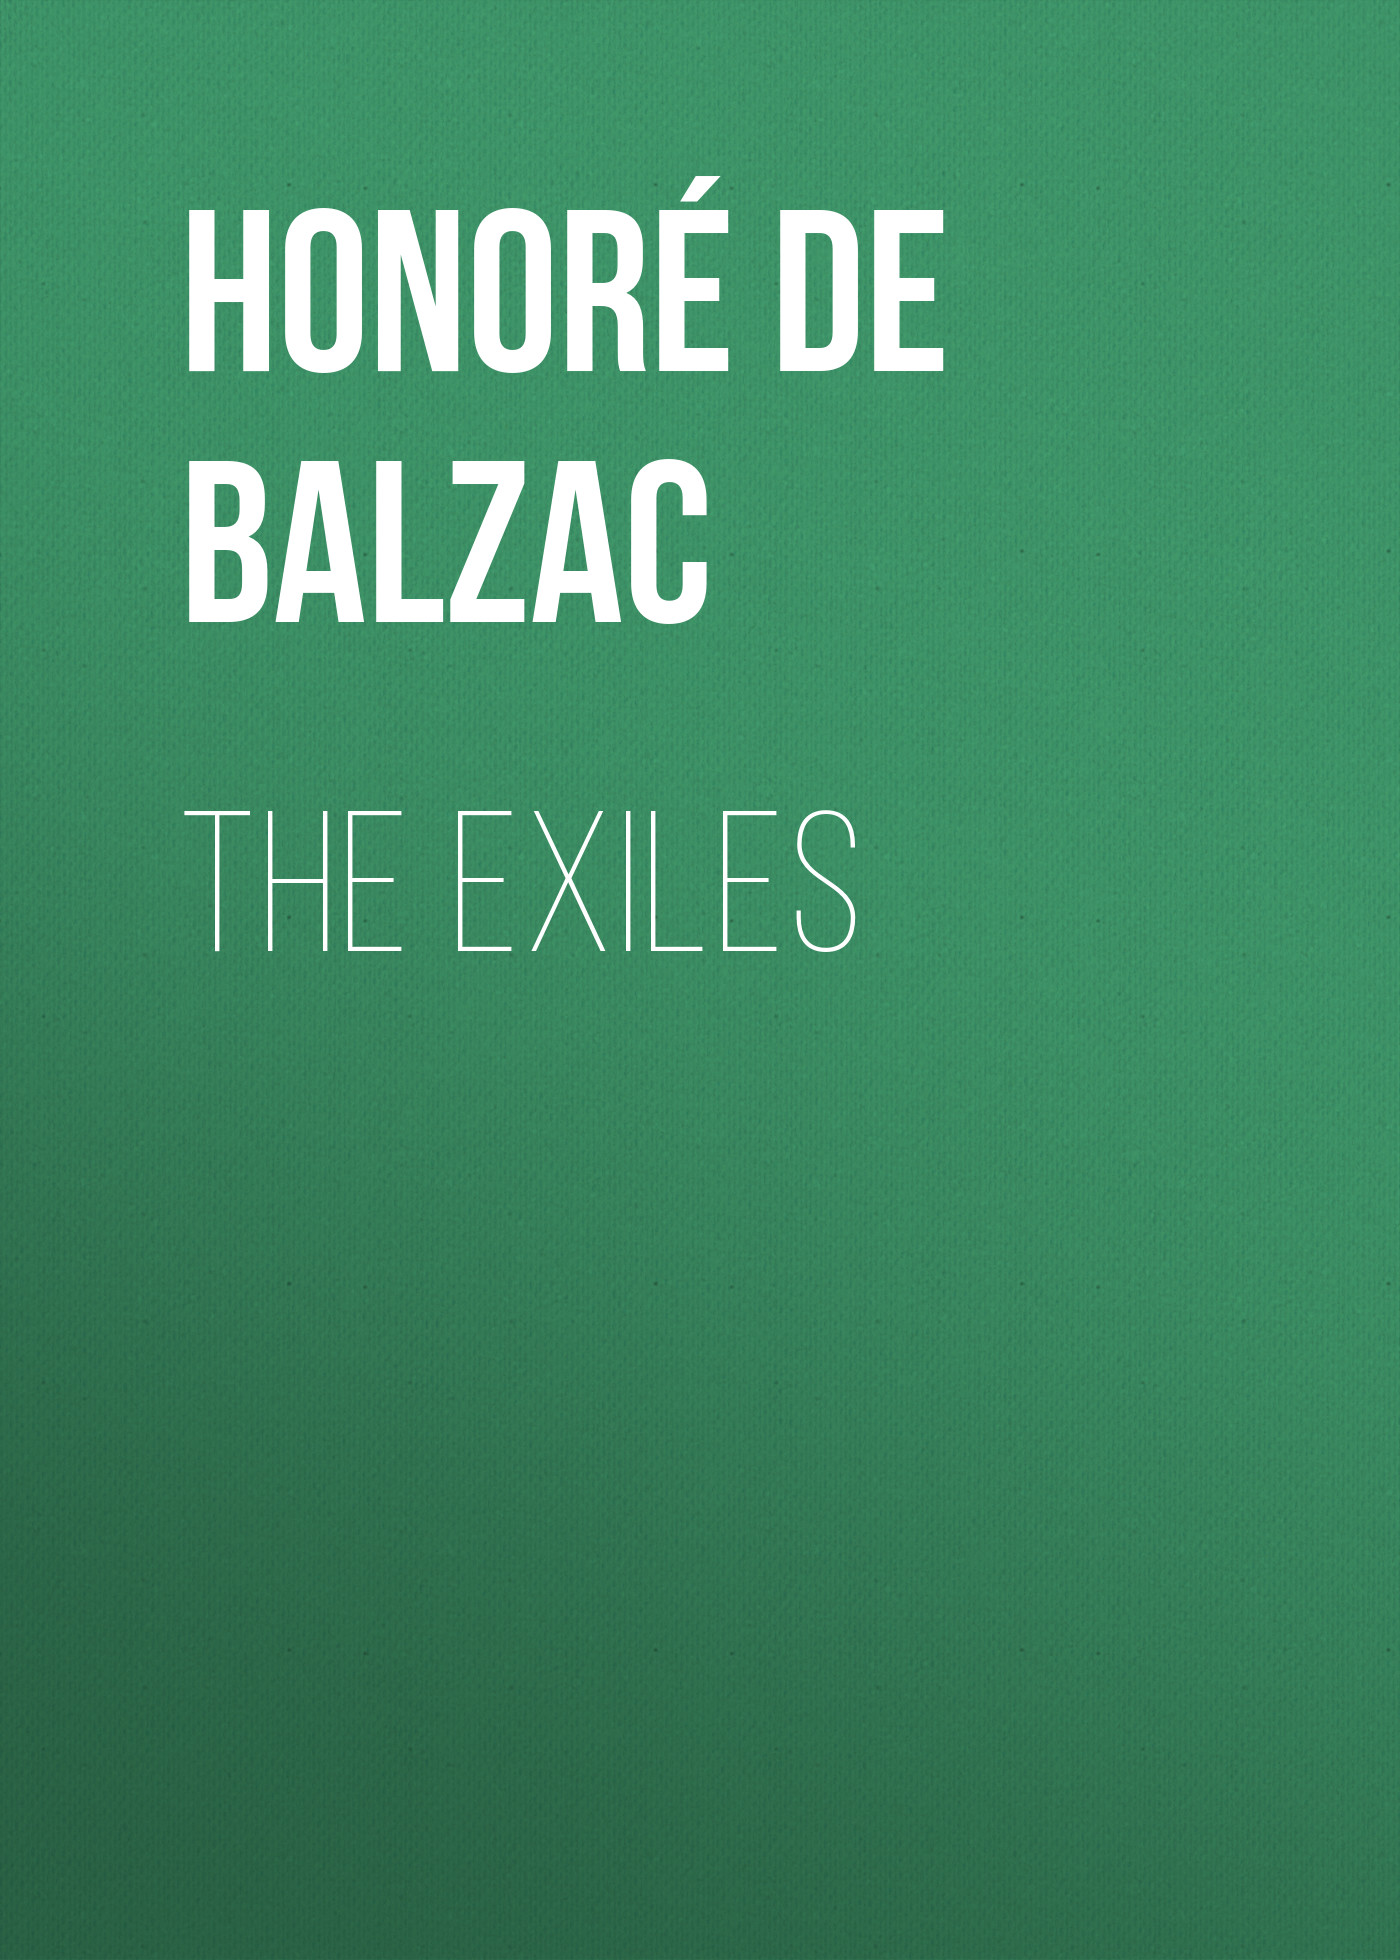 Книга The Exiles из серии , созданная Honoré Balzac, может относится к жанру Литература 19 века, Зарубежная старинная литература, Зарубежная классика. Стоимость электронной книги The Exiles с идентификатором 25020651 составляет 0 руб.